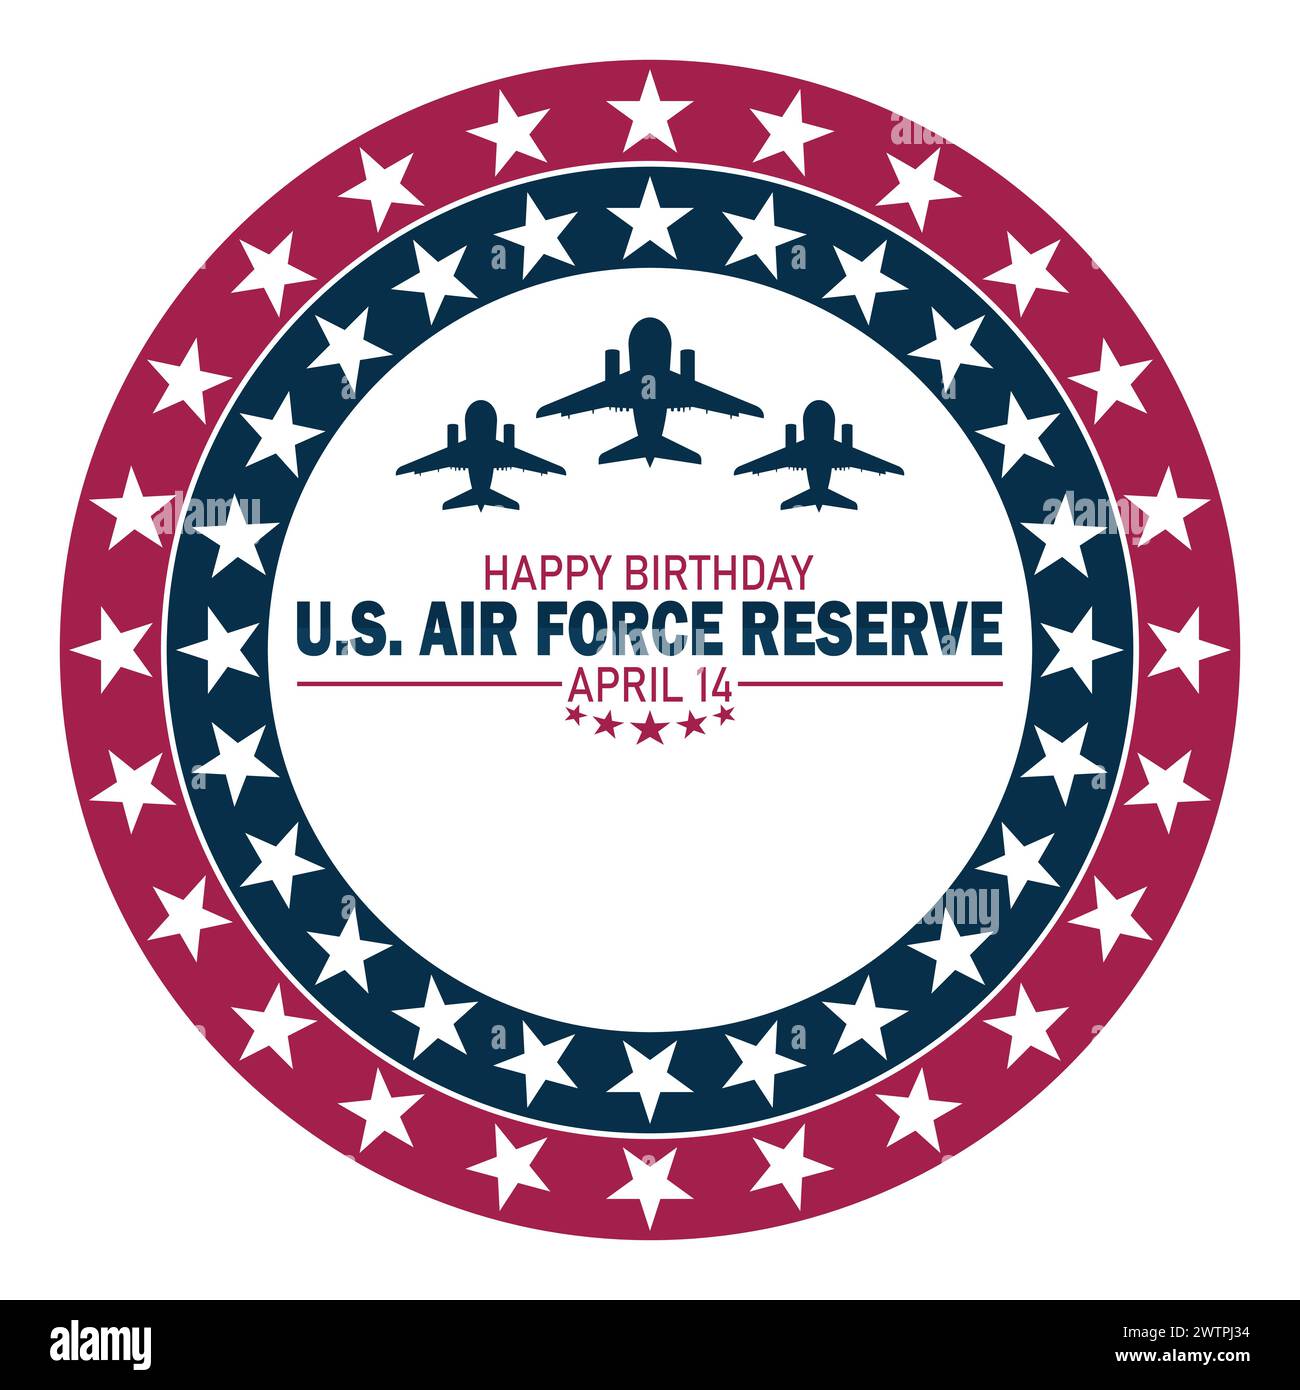 Happy Birthday US AIR Force Reserve. Urlaubskonzept. Vorlage für Hintergrund, Banner, Karte, Poster mit Textbeschriftung Stock Vektor